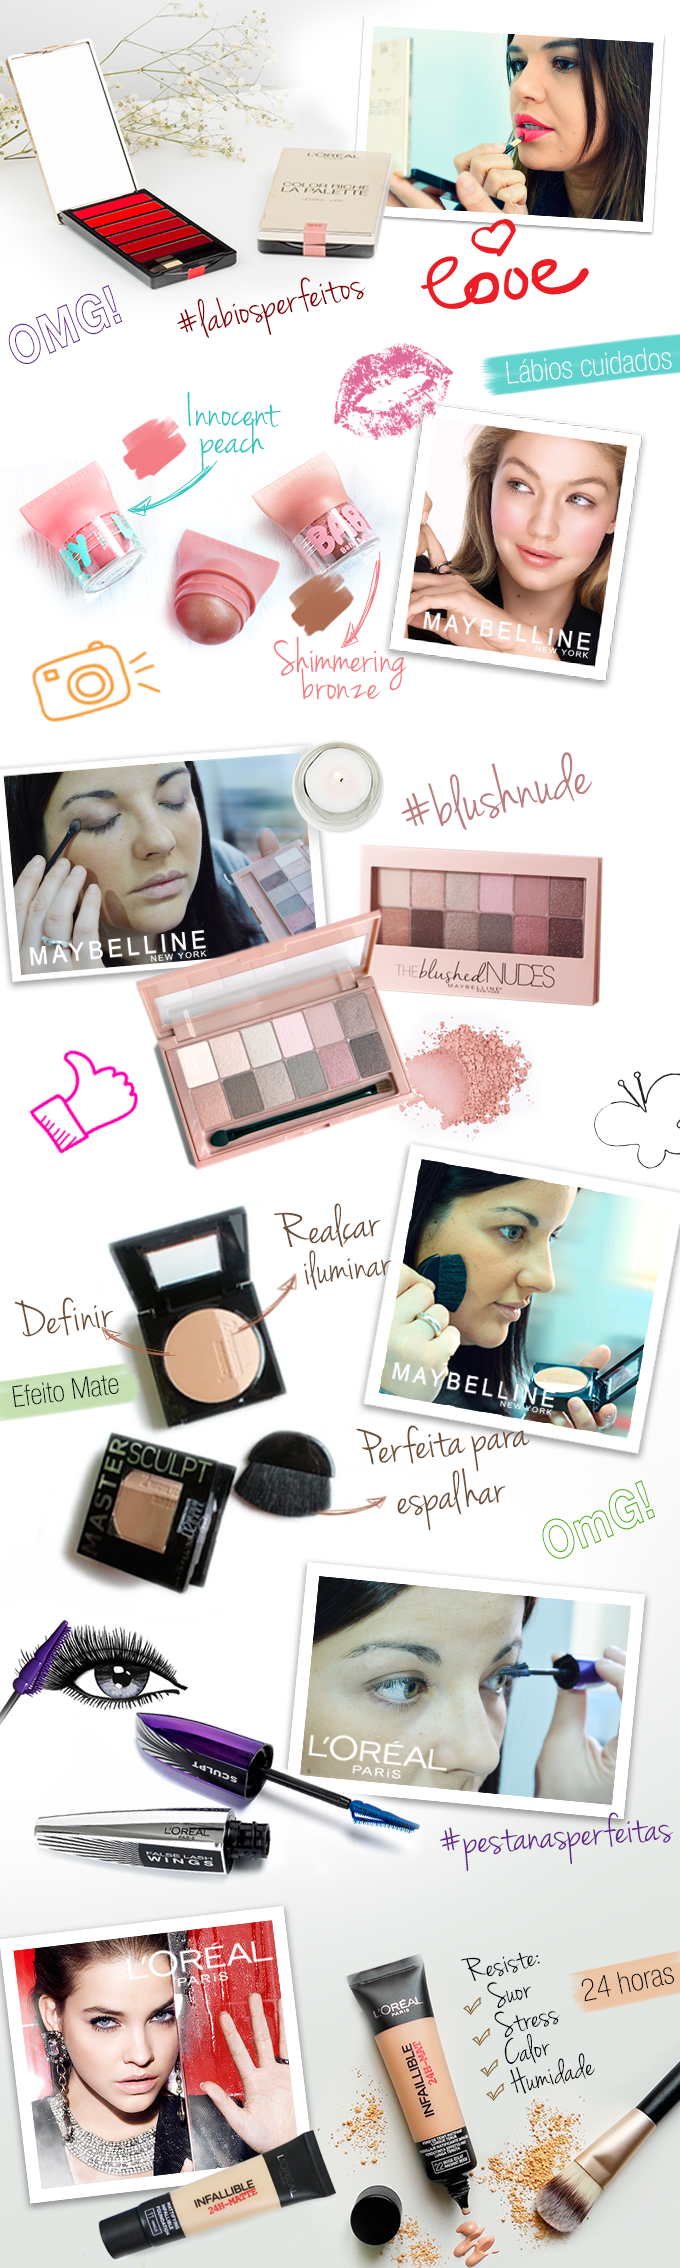 blog_makeup